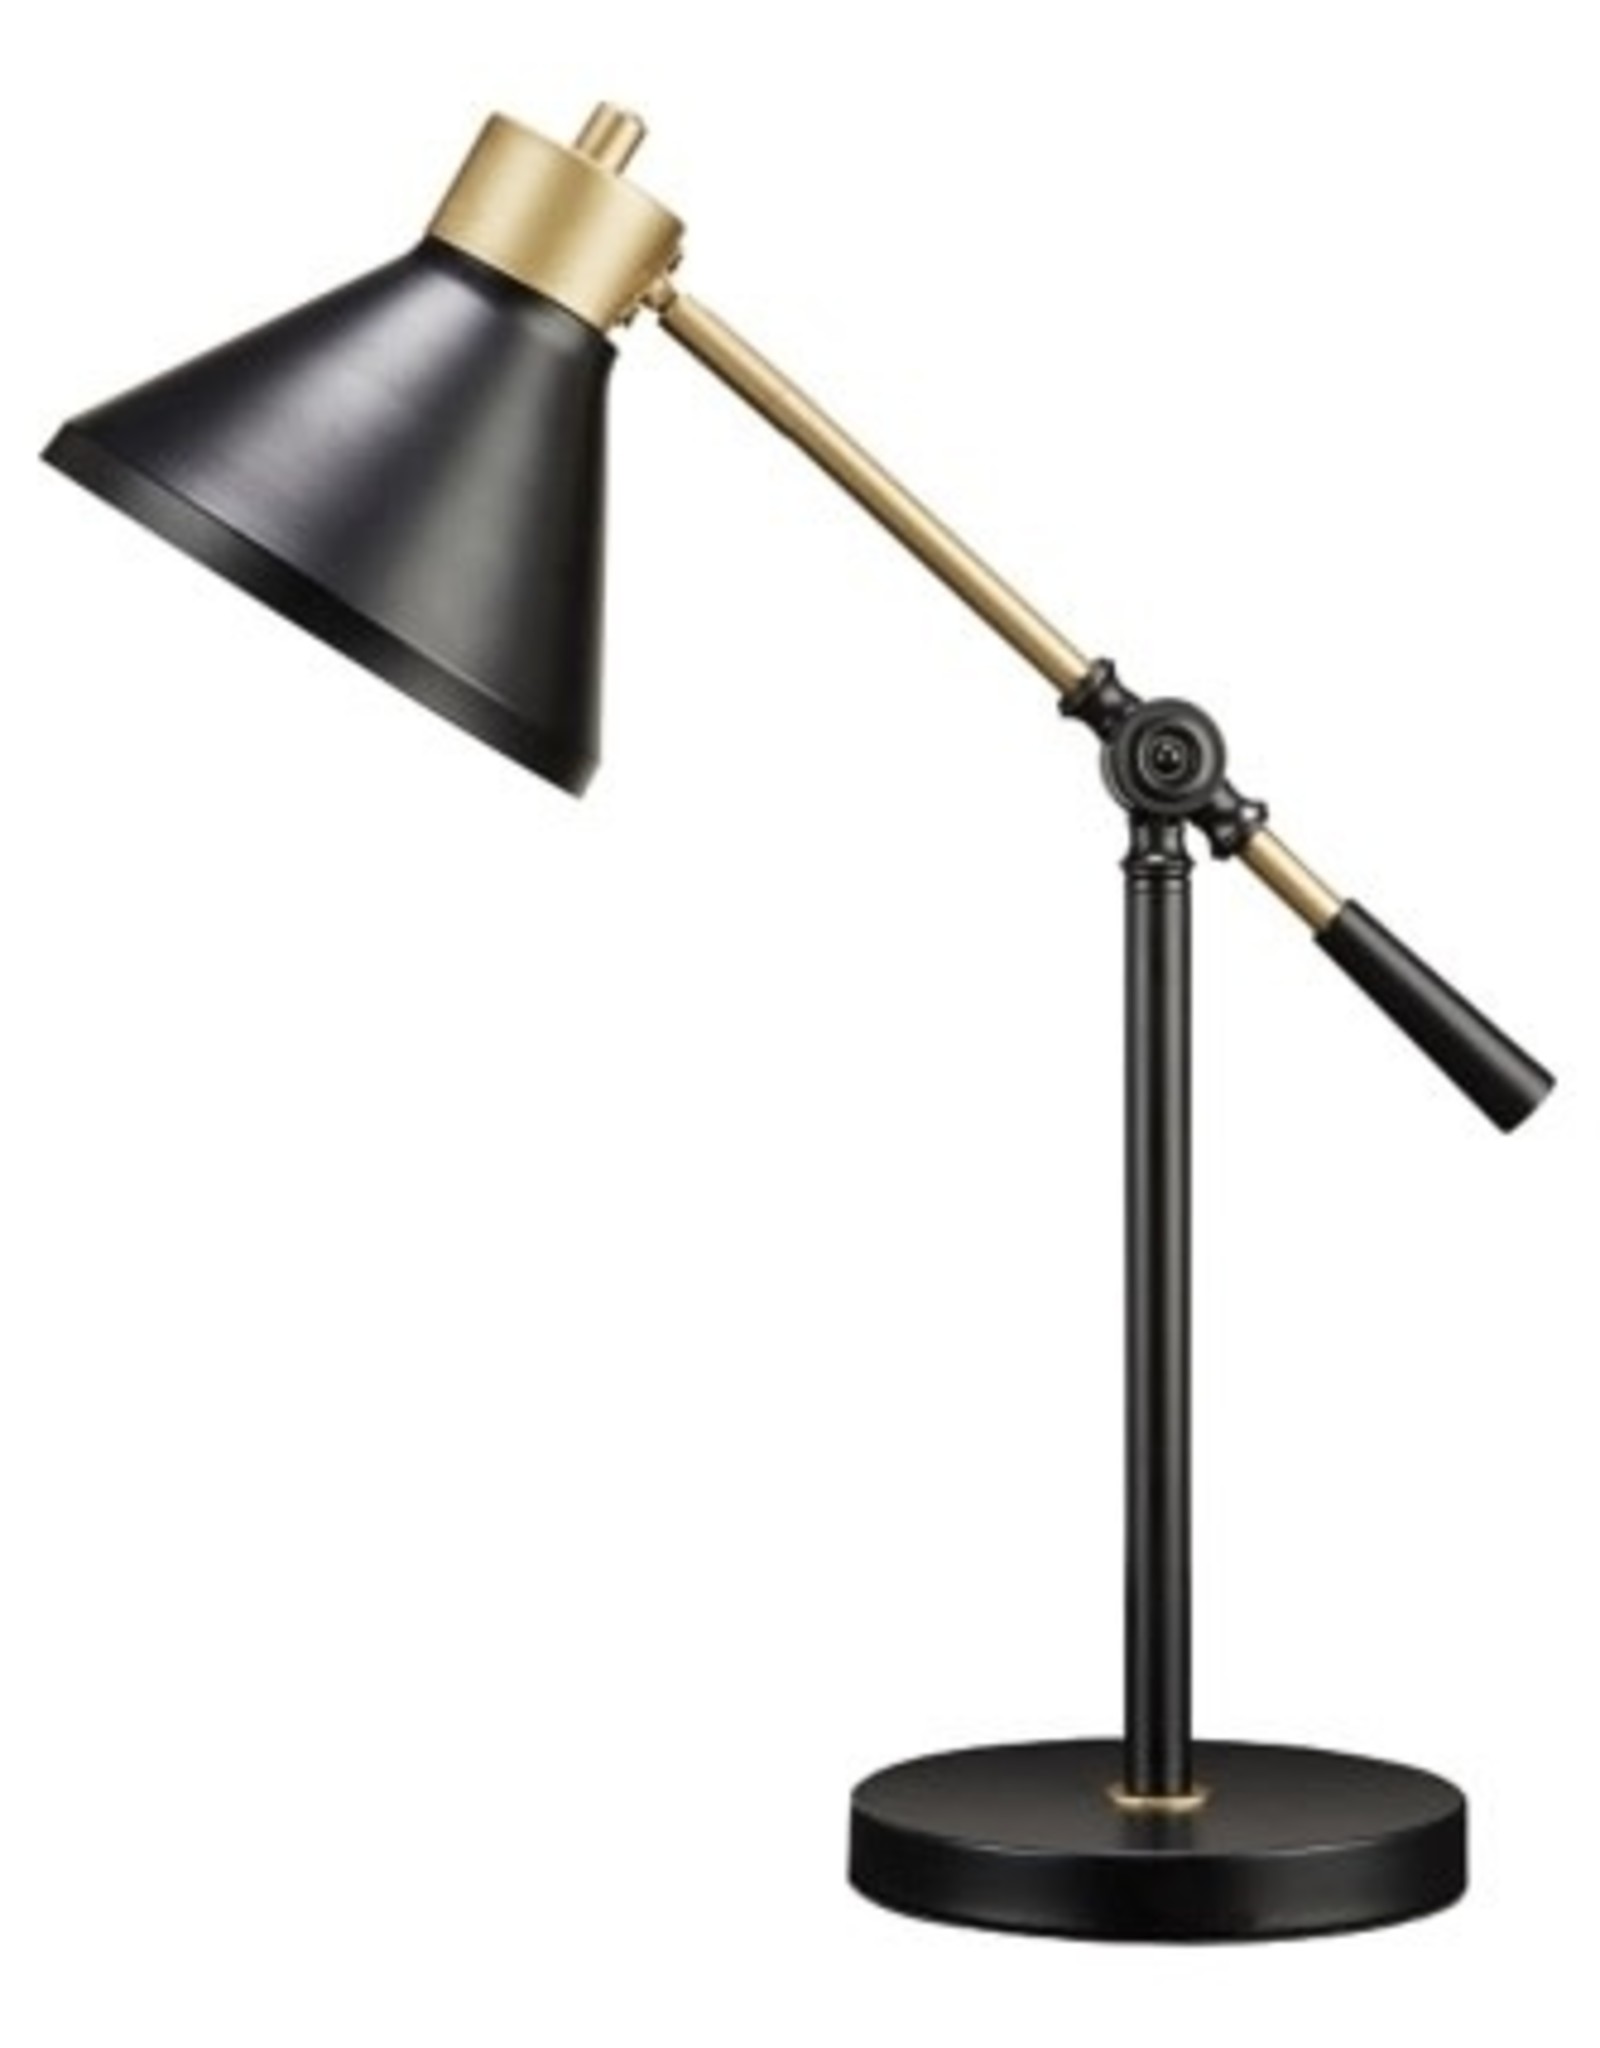 L734342 Metal Desk Lamp